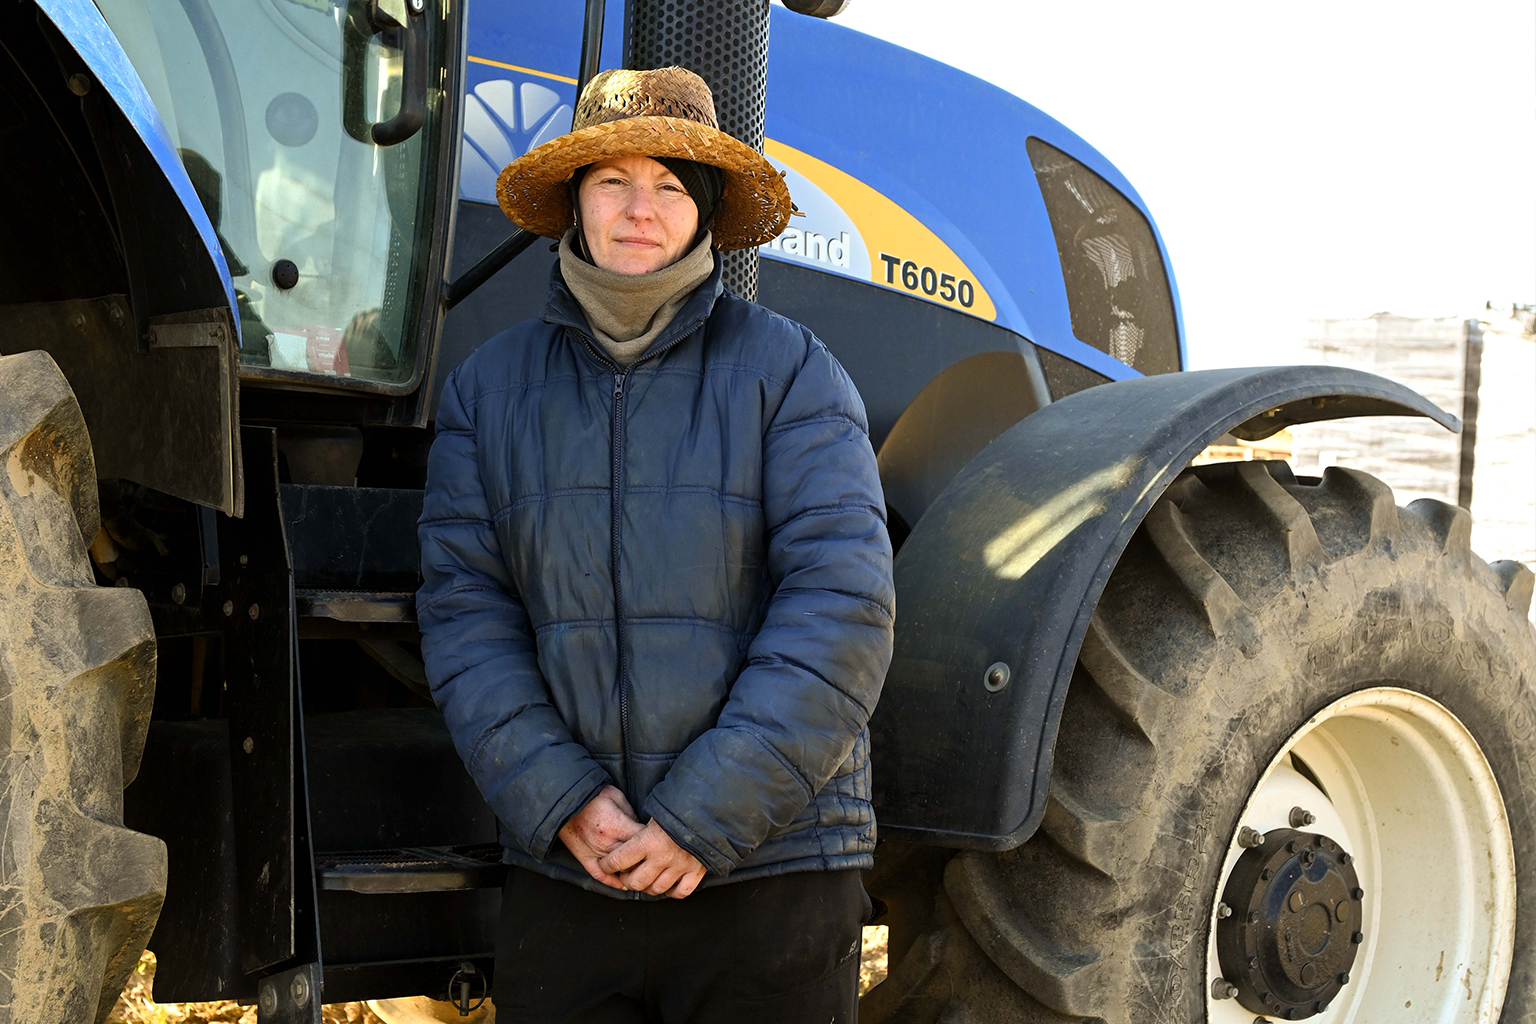 Donant Vida a la Terra: Conversa amb Anna Pasqual, una jove pagesa de la Baixa Tordera